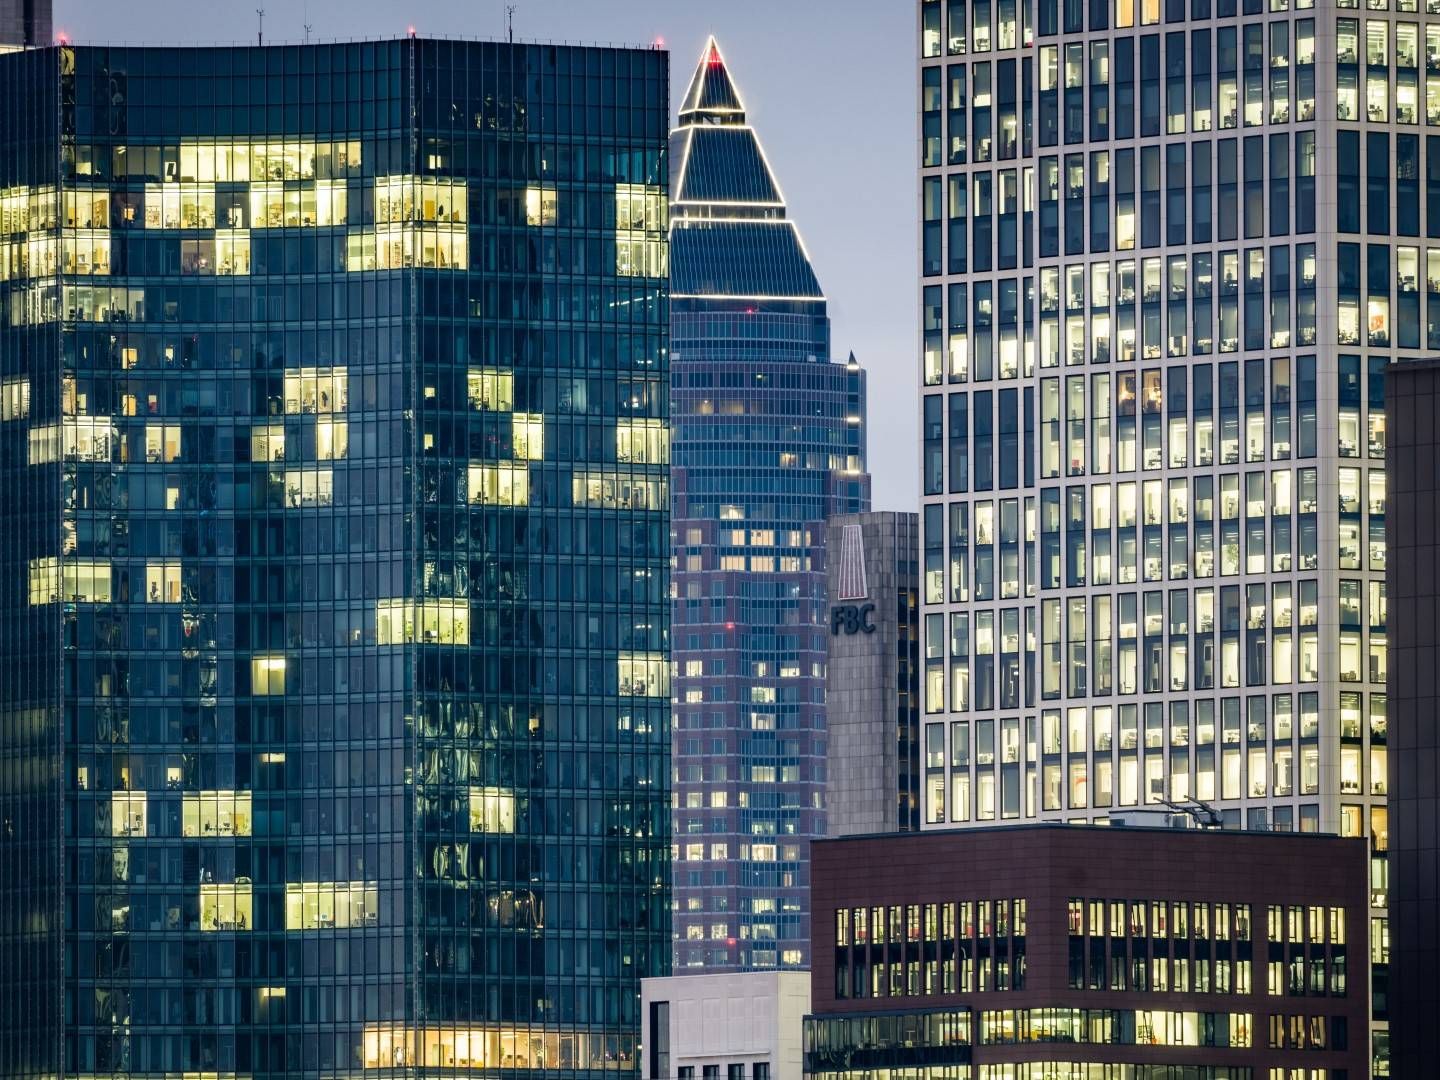 Büros in den Frankfurter Hochhäusern sind nur teilweise belegt | Foto: picture alliance/dpa | Frank Rumpenhorst